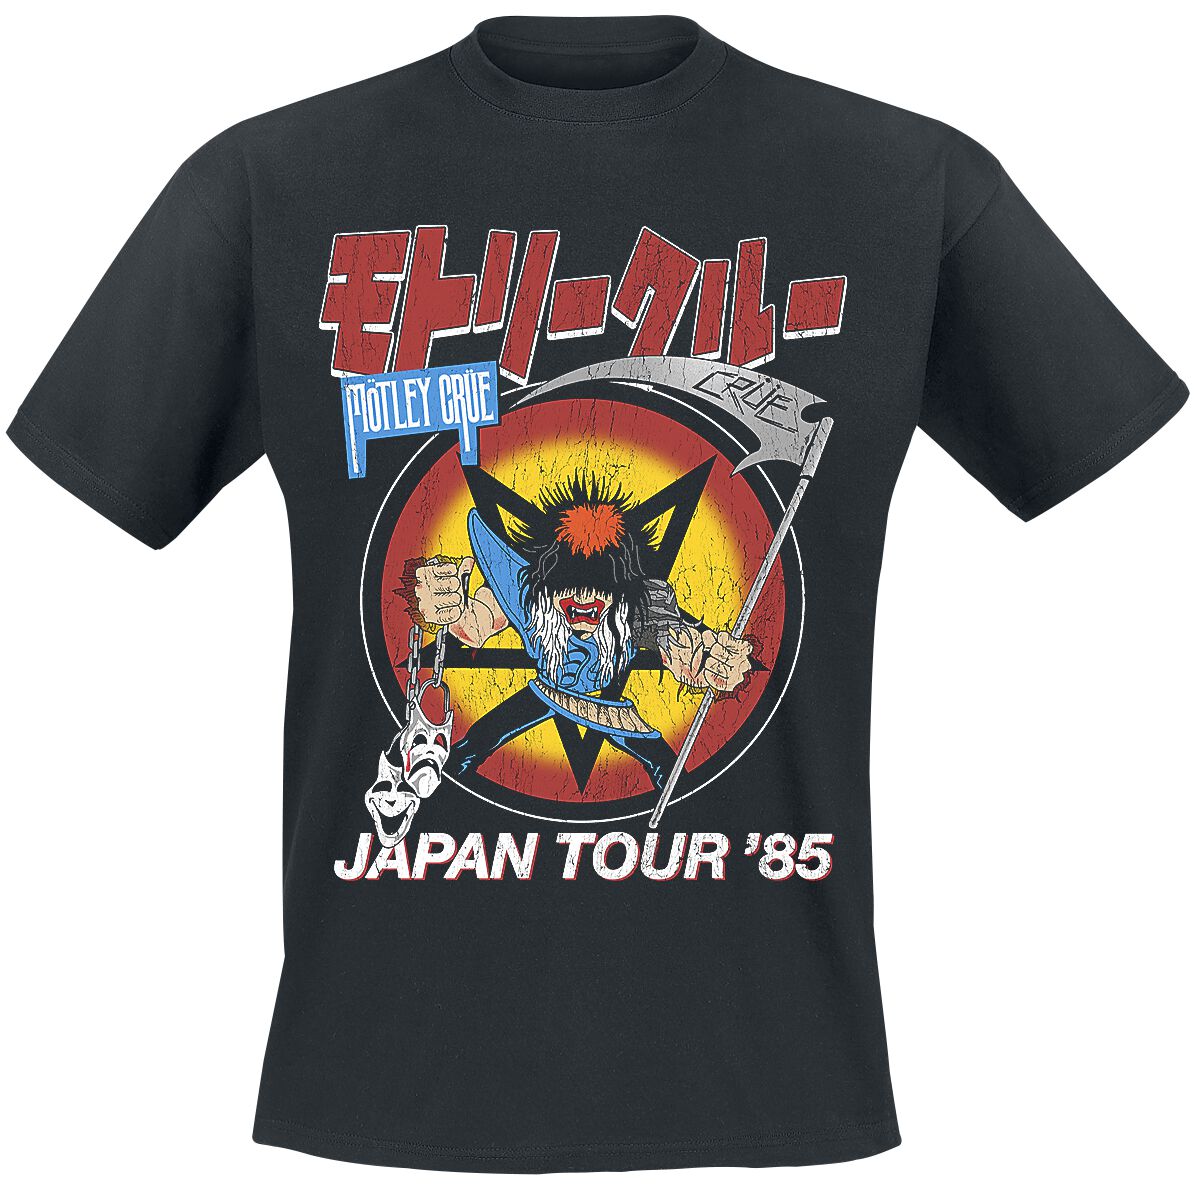 Mötley Crüe T-Shirt - Japan Tour - S bis 4XL - für Männer - Größe XXL - schwarz  - Lizenziertes Merchandise!